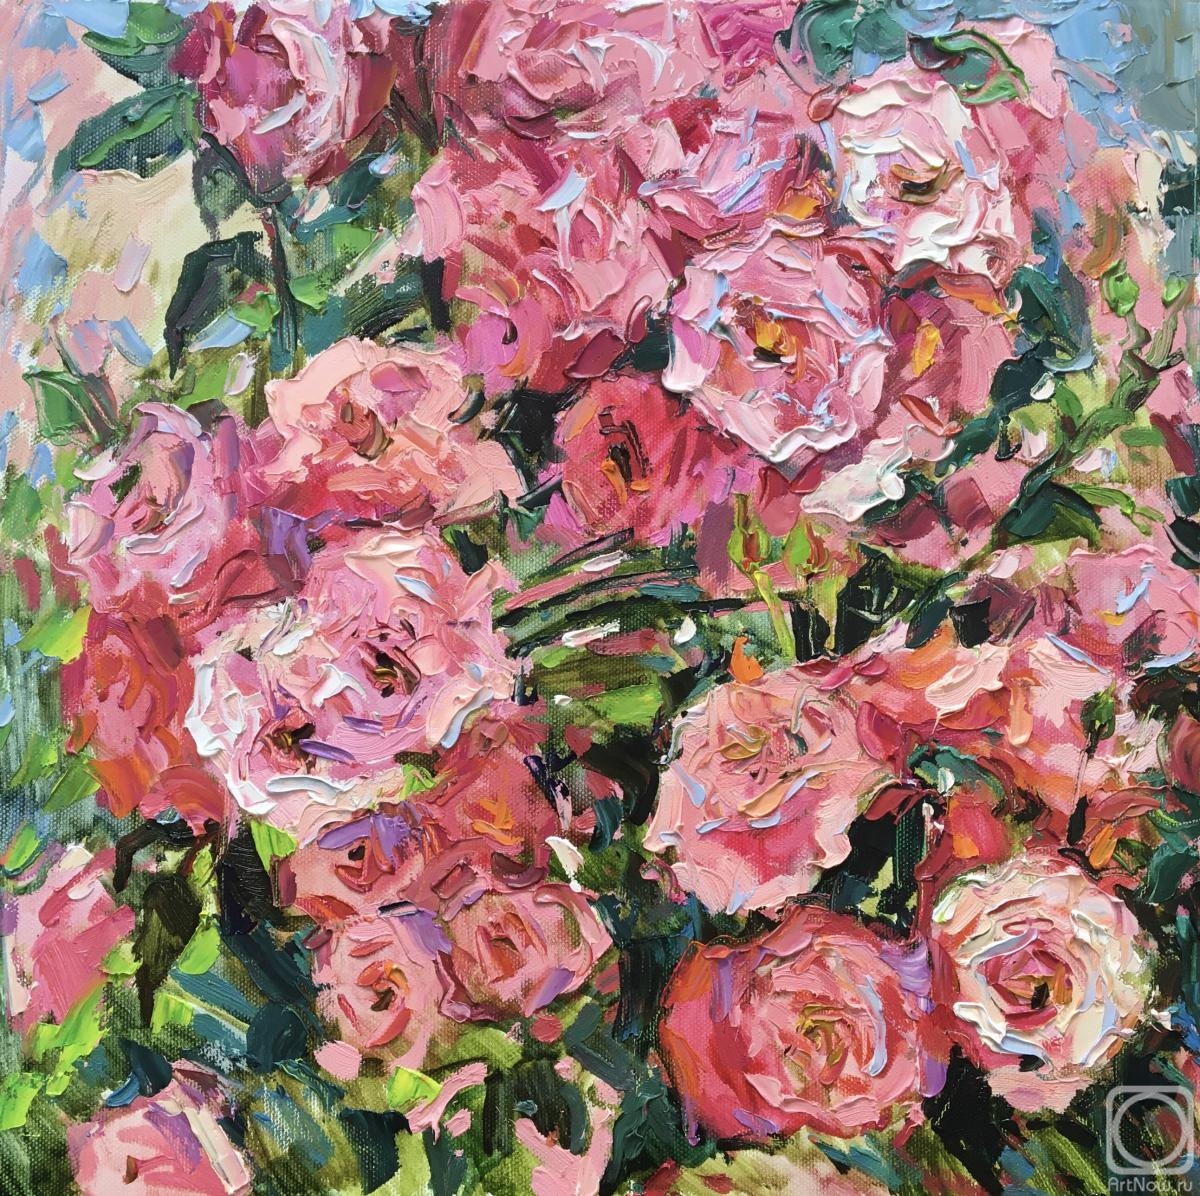 Ostrovskaya Elena. Pink rose